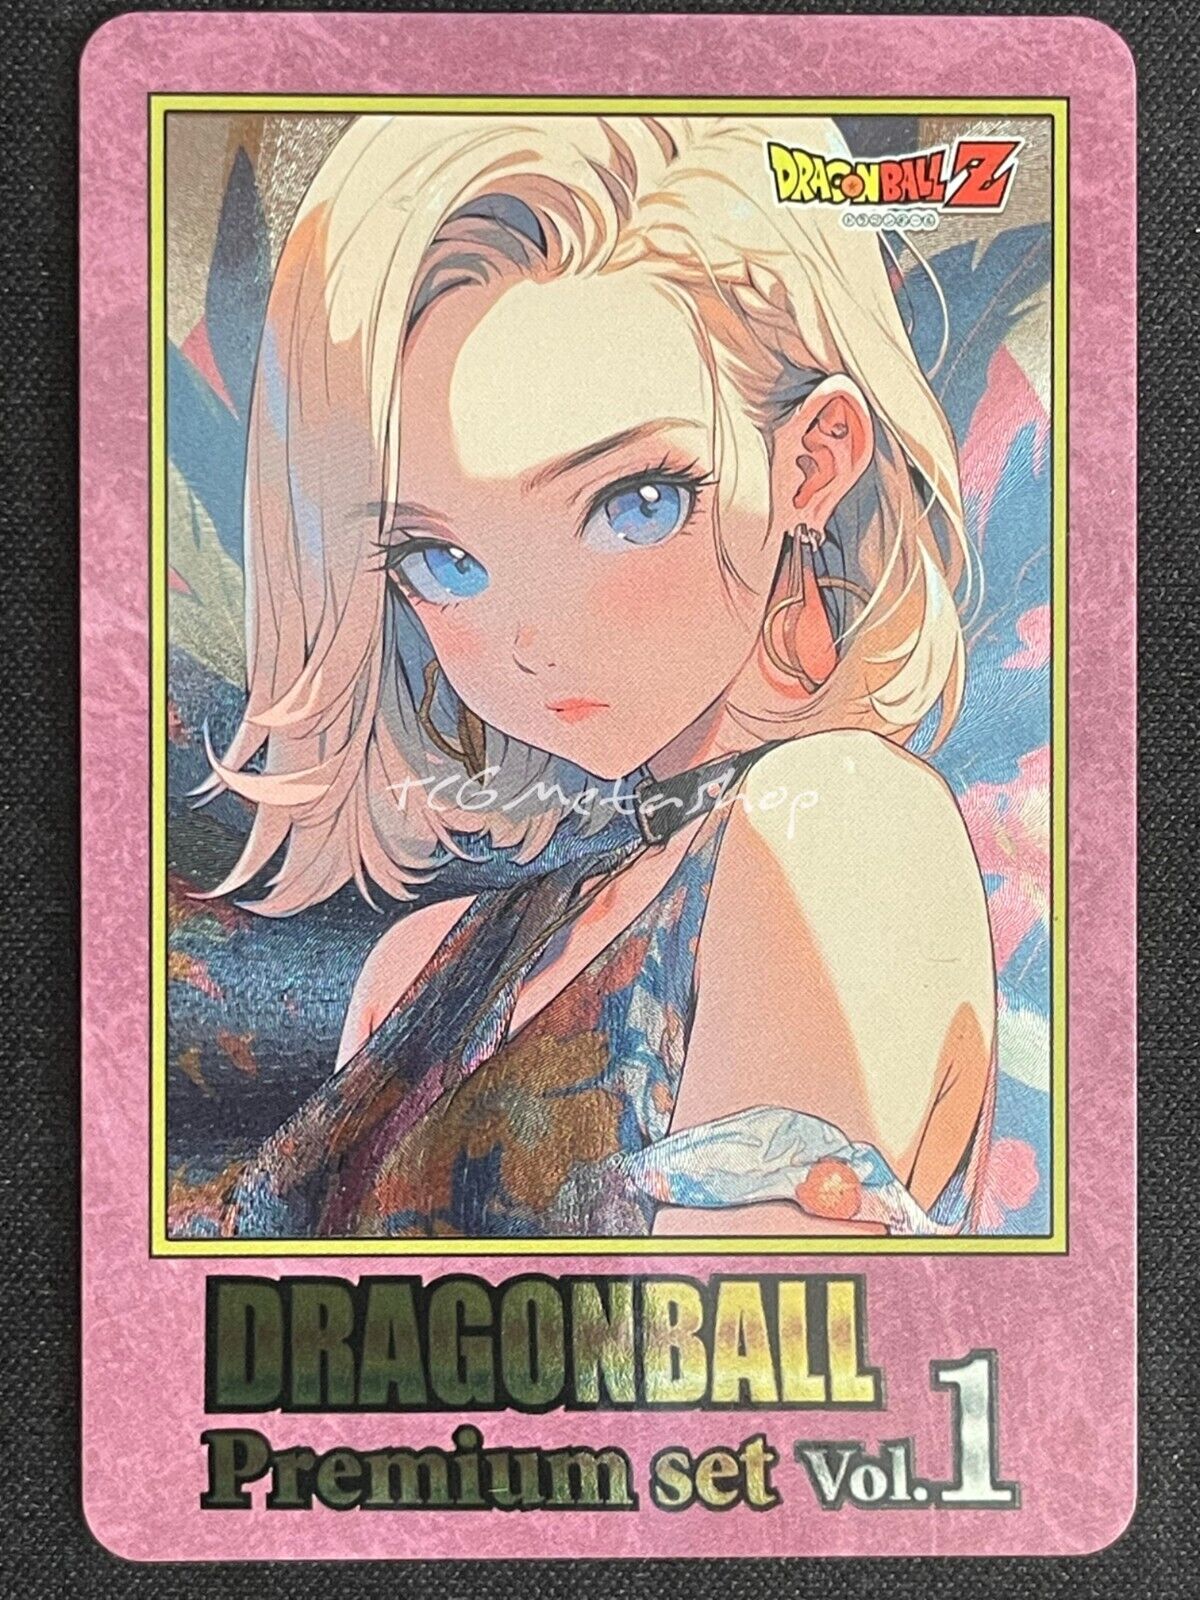 🔥 Android 18 Dragon Ball Goddess Story Anime Card ACG # 2826 🔥